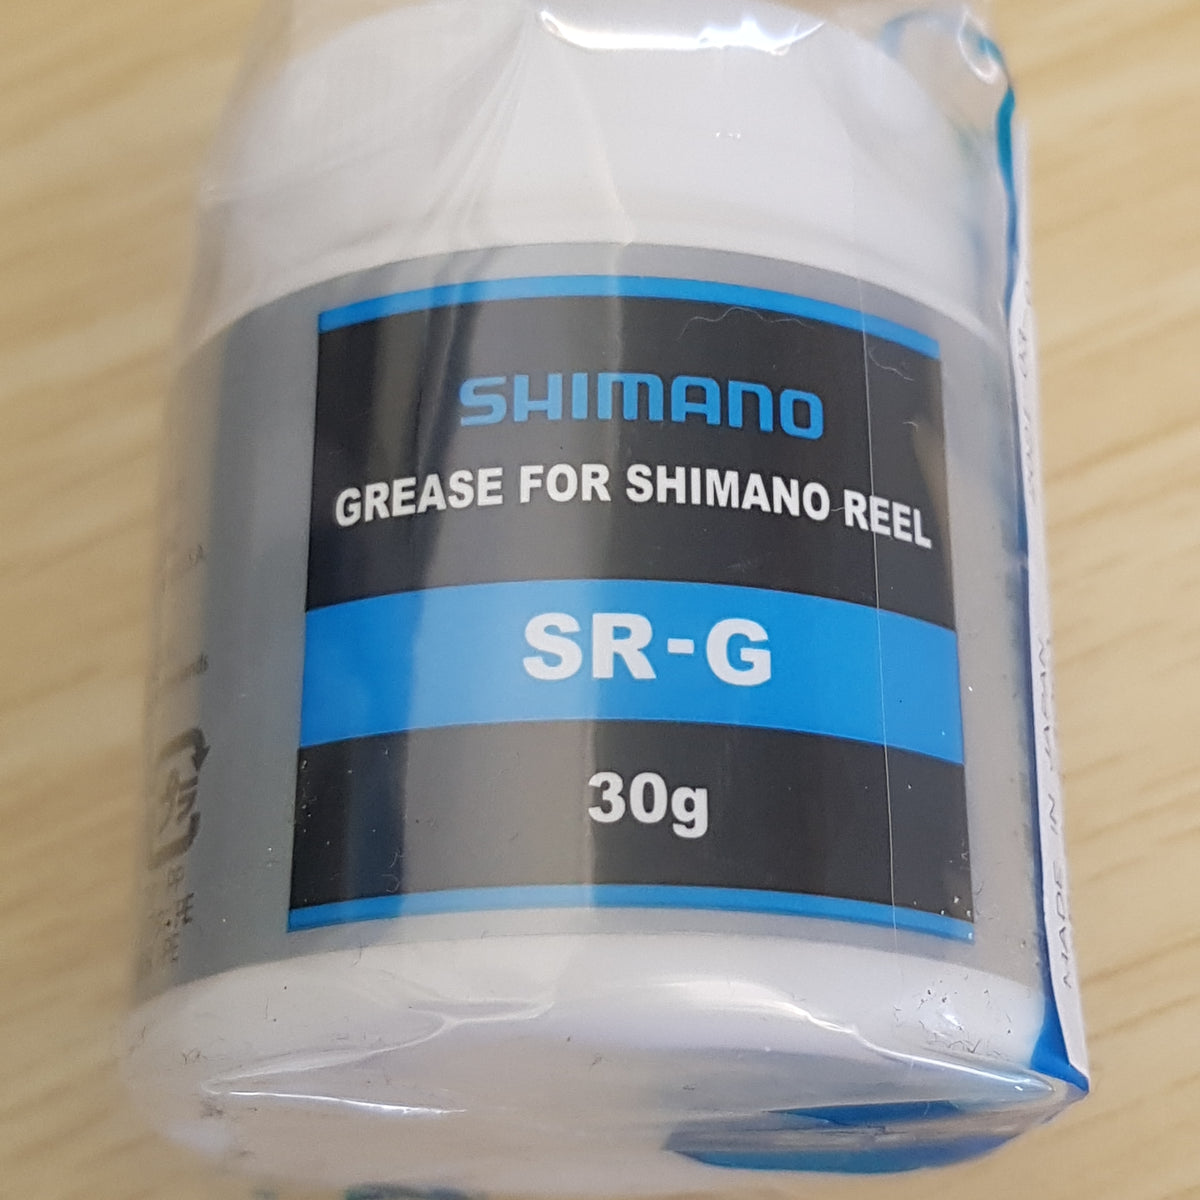 Shimano REEL OIL & GREASE SPRAY SET SP-003H